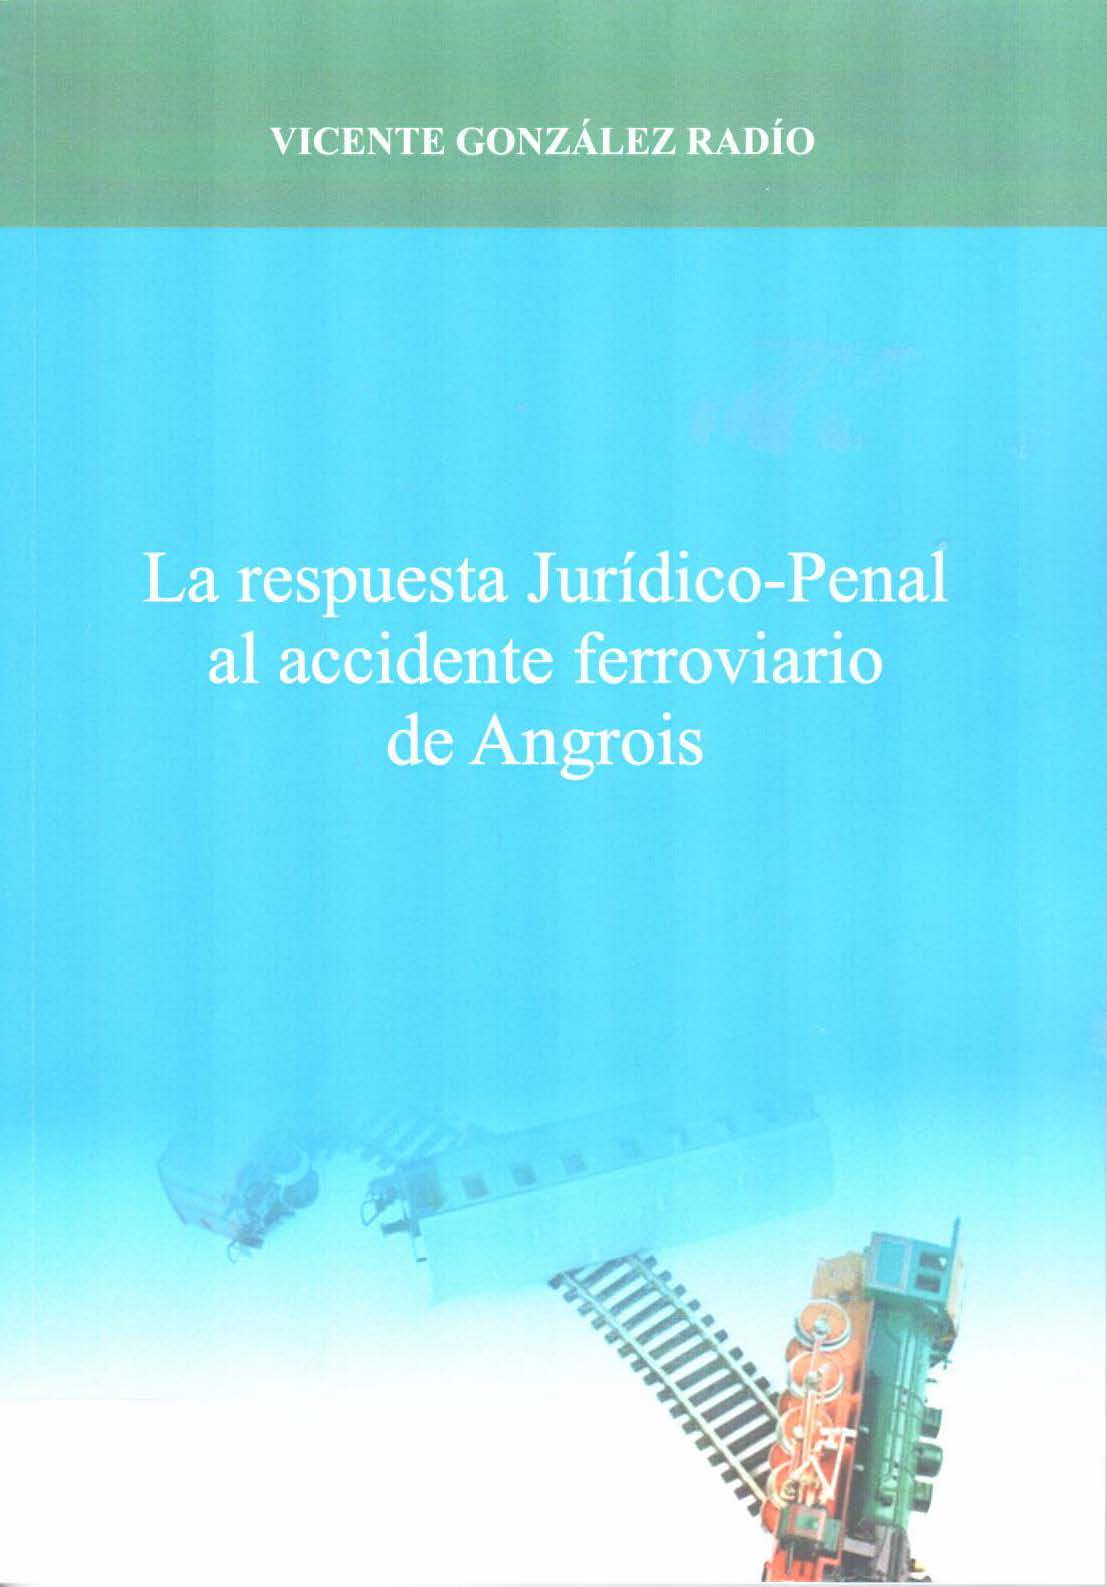 Imagen de portada del libro La respuesta jurídico-penal al accidente ferroviario de Angrois